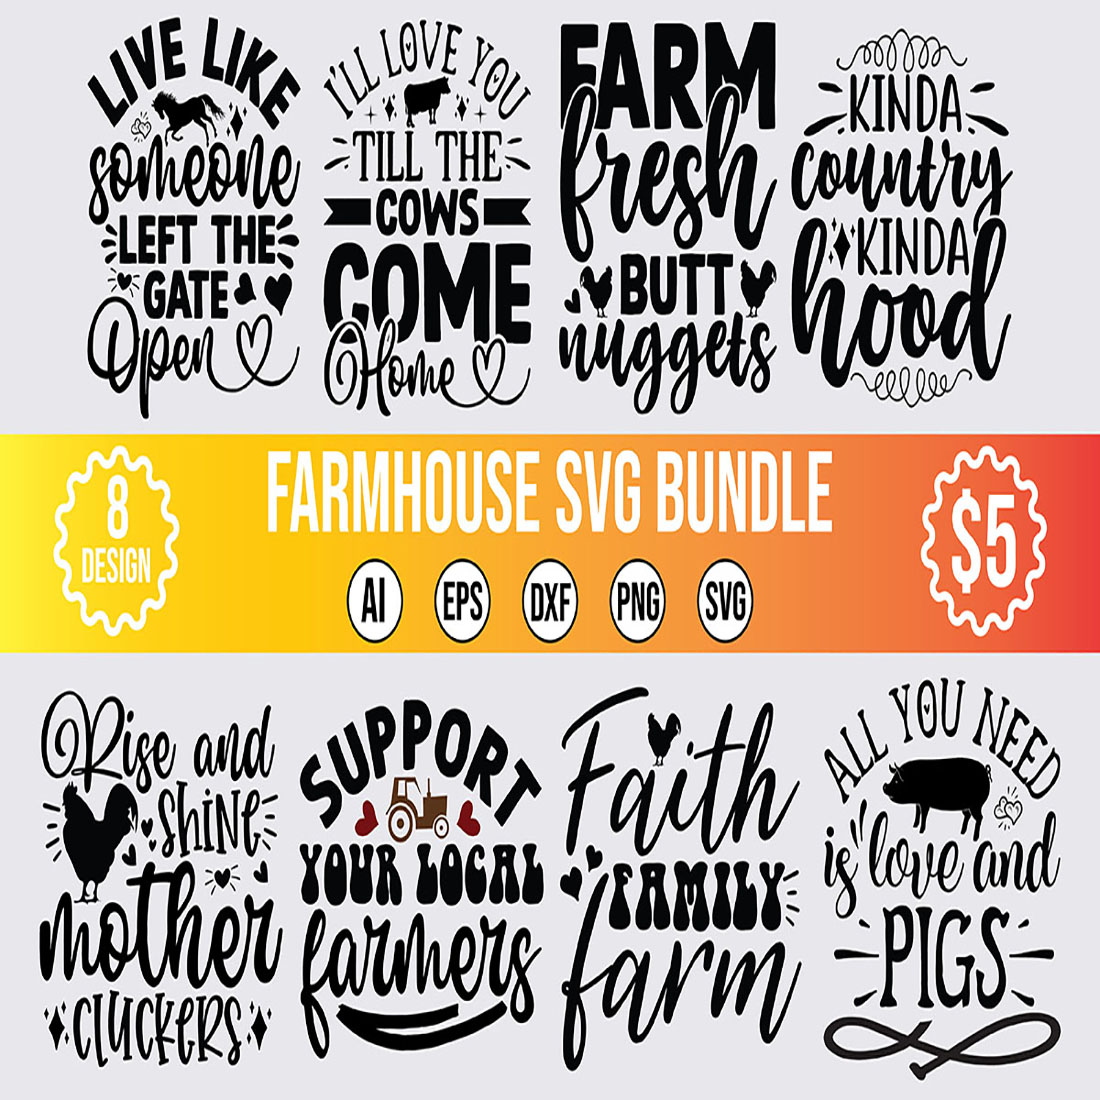 8 Farmhouse SVG Design Bundle Vector Template preview image.